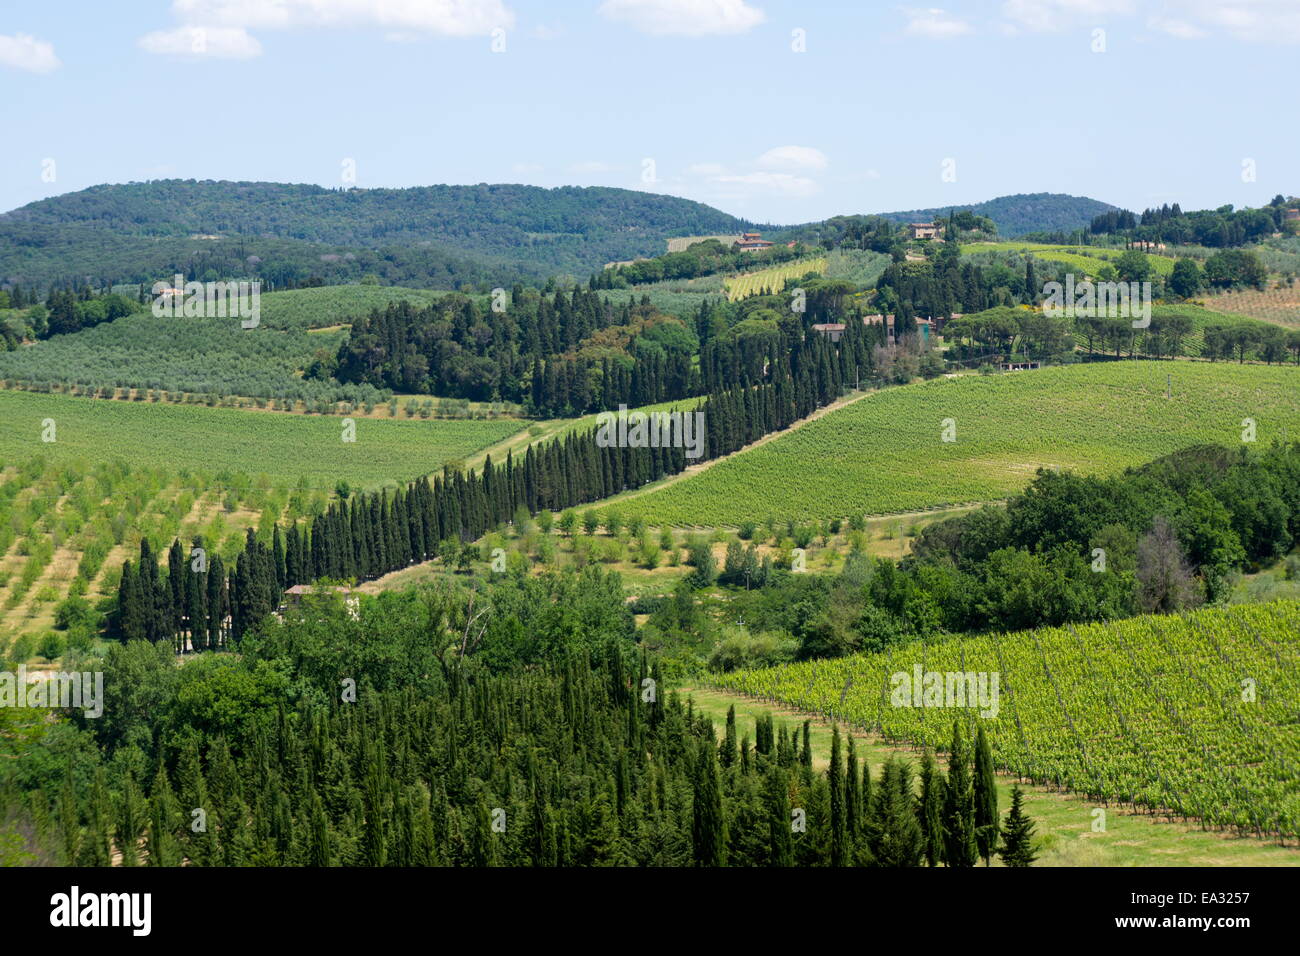 Vineyards and cypress trees, Chianti region, Tuscany, Italy, Europe Stock Photo